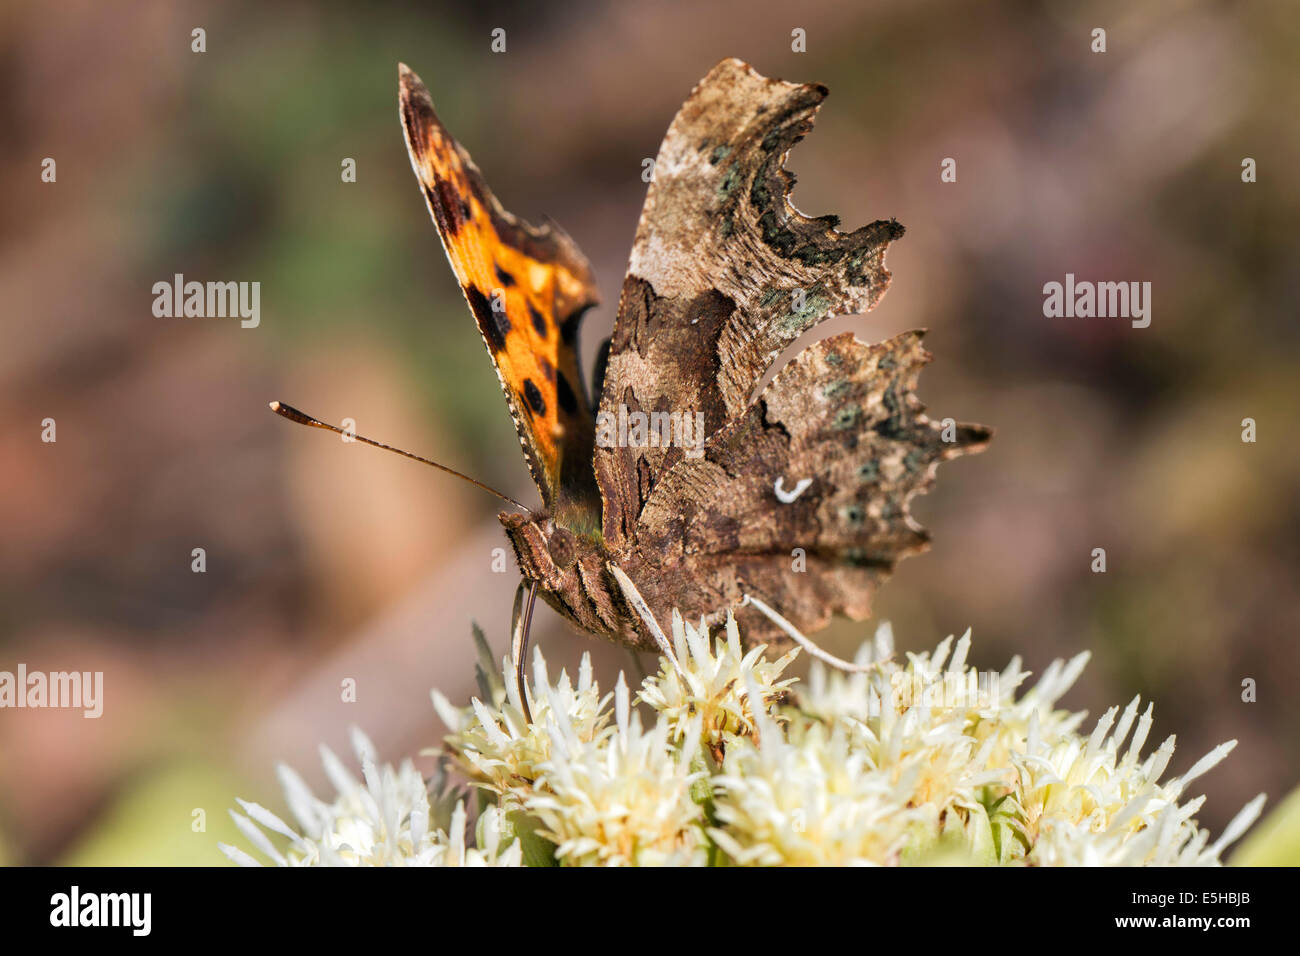 Comma butterfly (Polygonia c-album), se nourrissant de Pétasite Petasites fleurs alpines (paradoxus), dans le sud du Pays de Galles, Royaume-Uni Banque D'Images